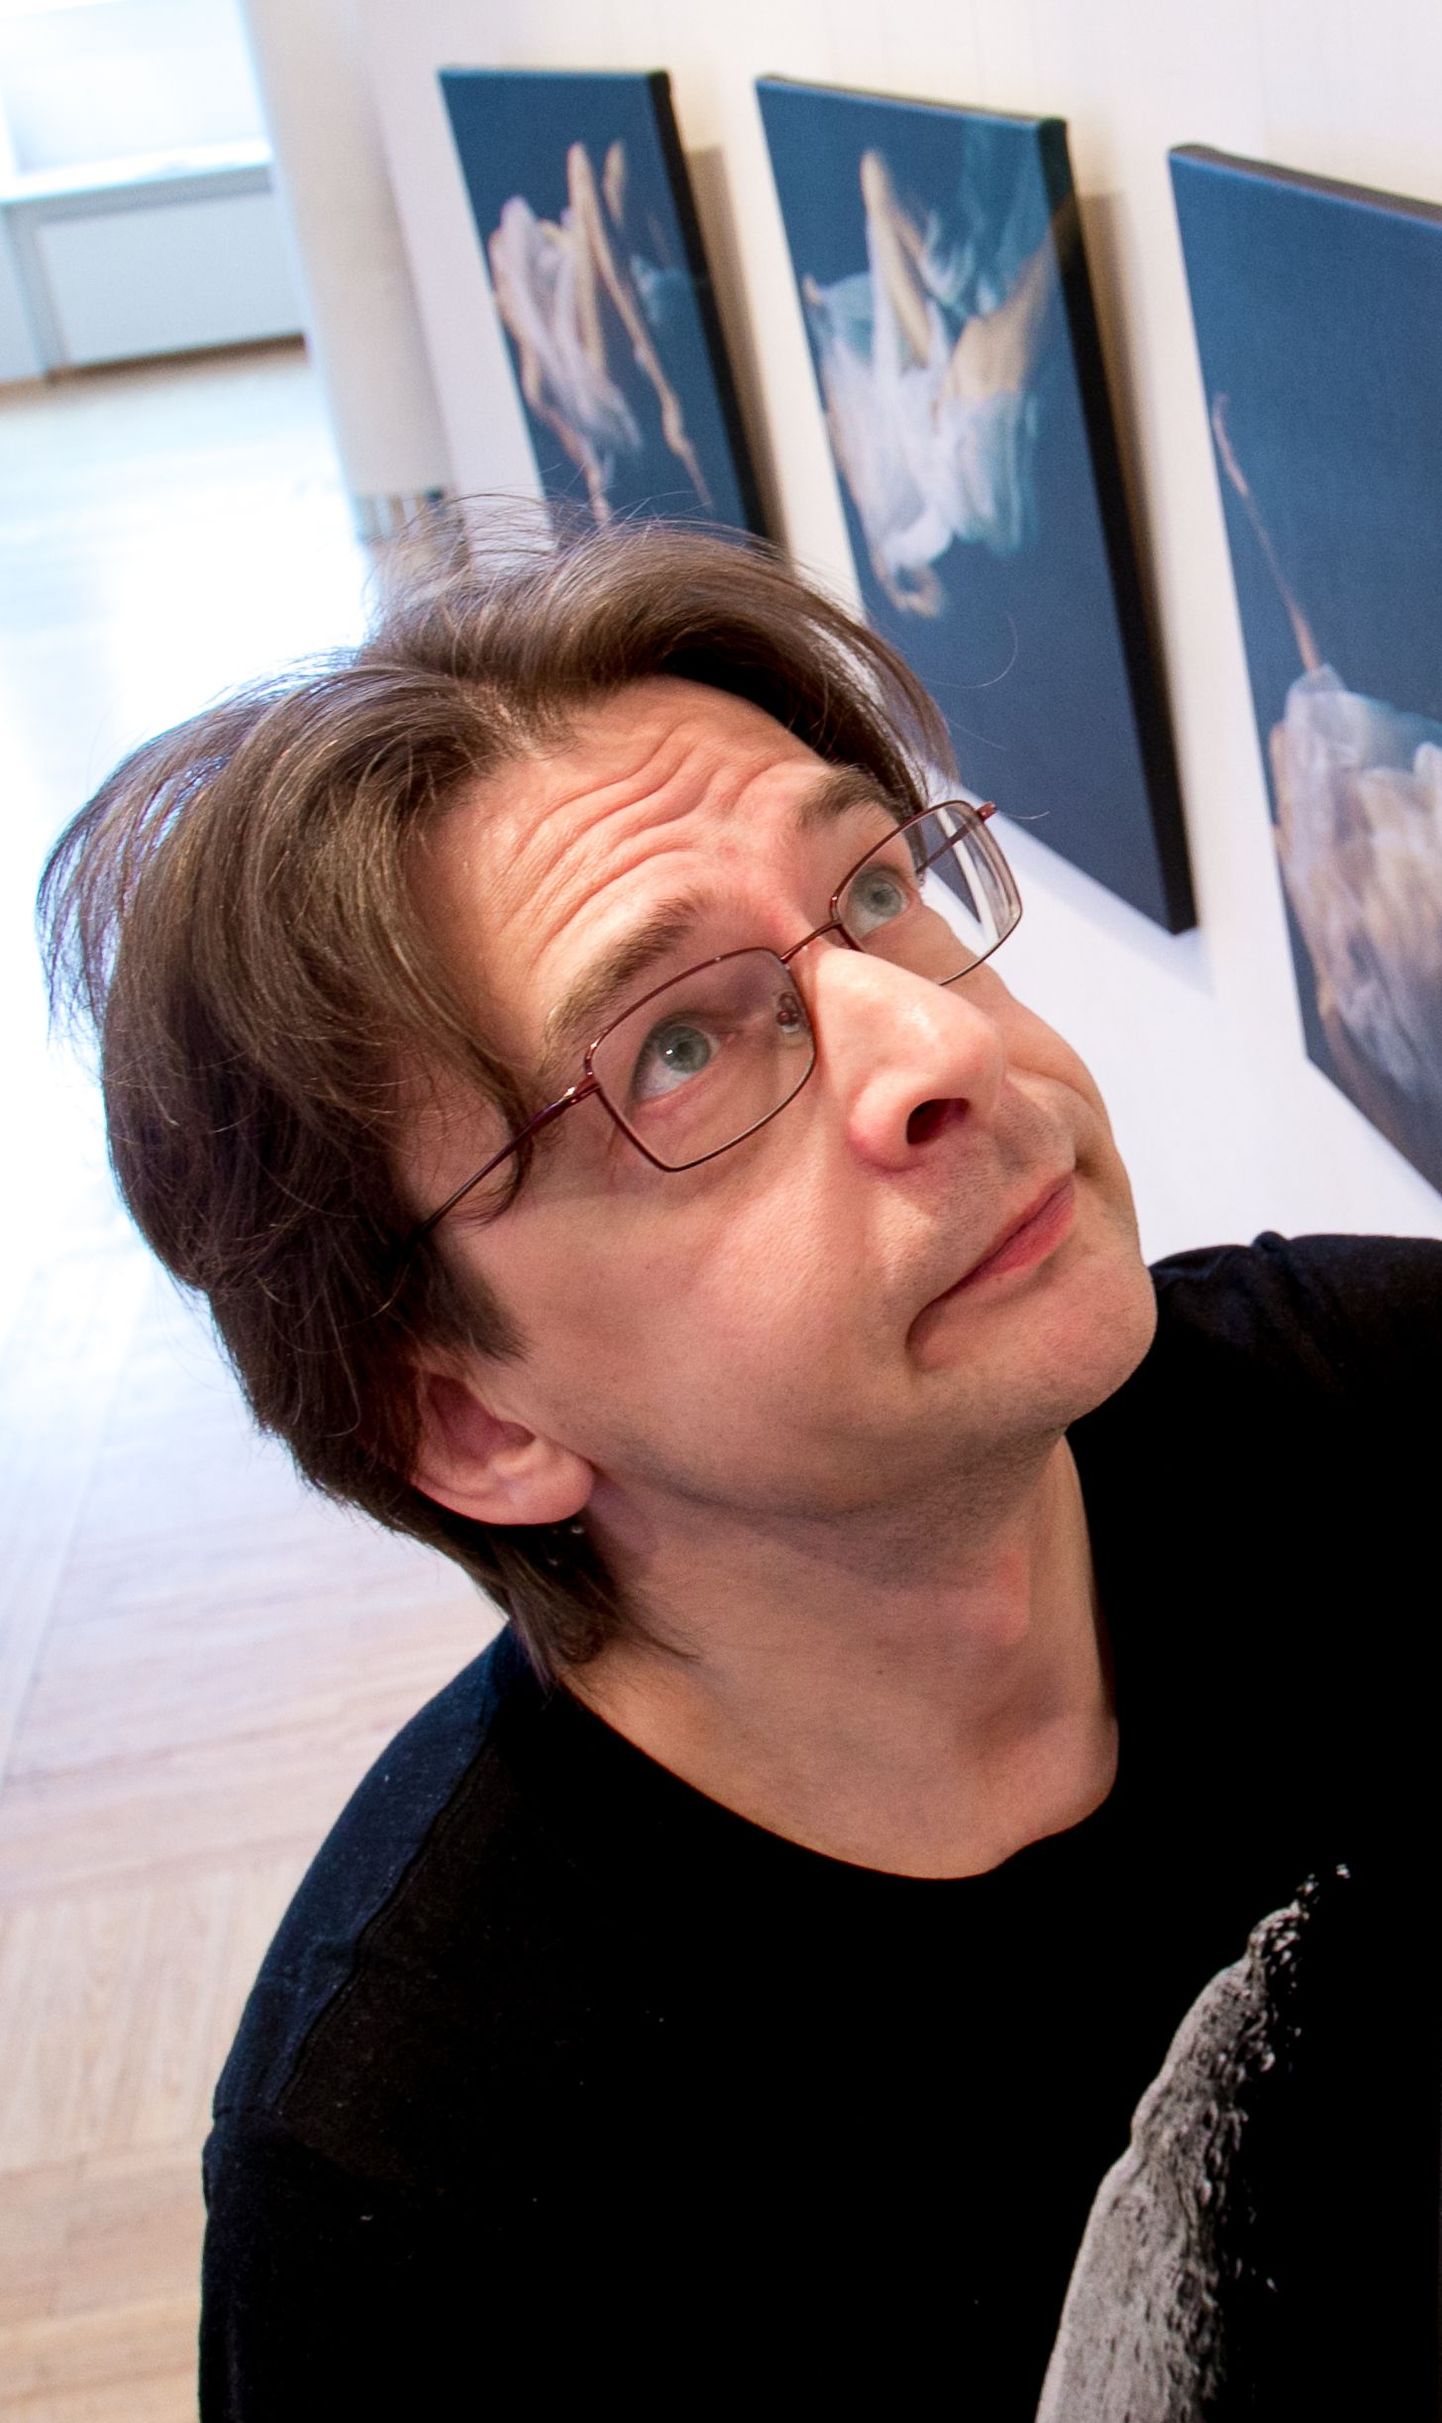 Andres Adamson on üks auhinnatumaid fotograafe Pärnumaal.